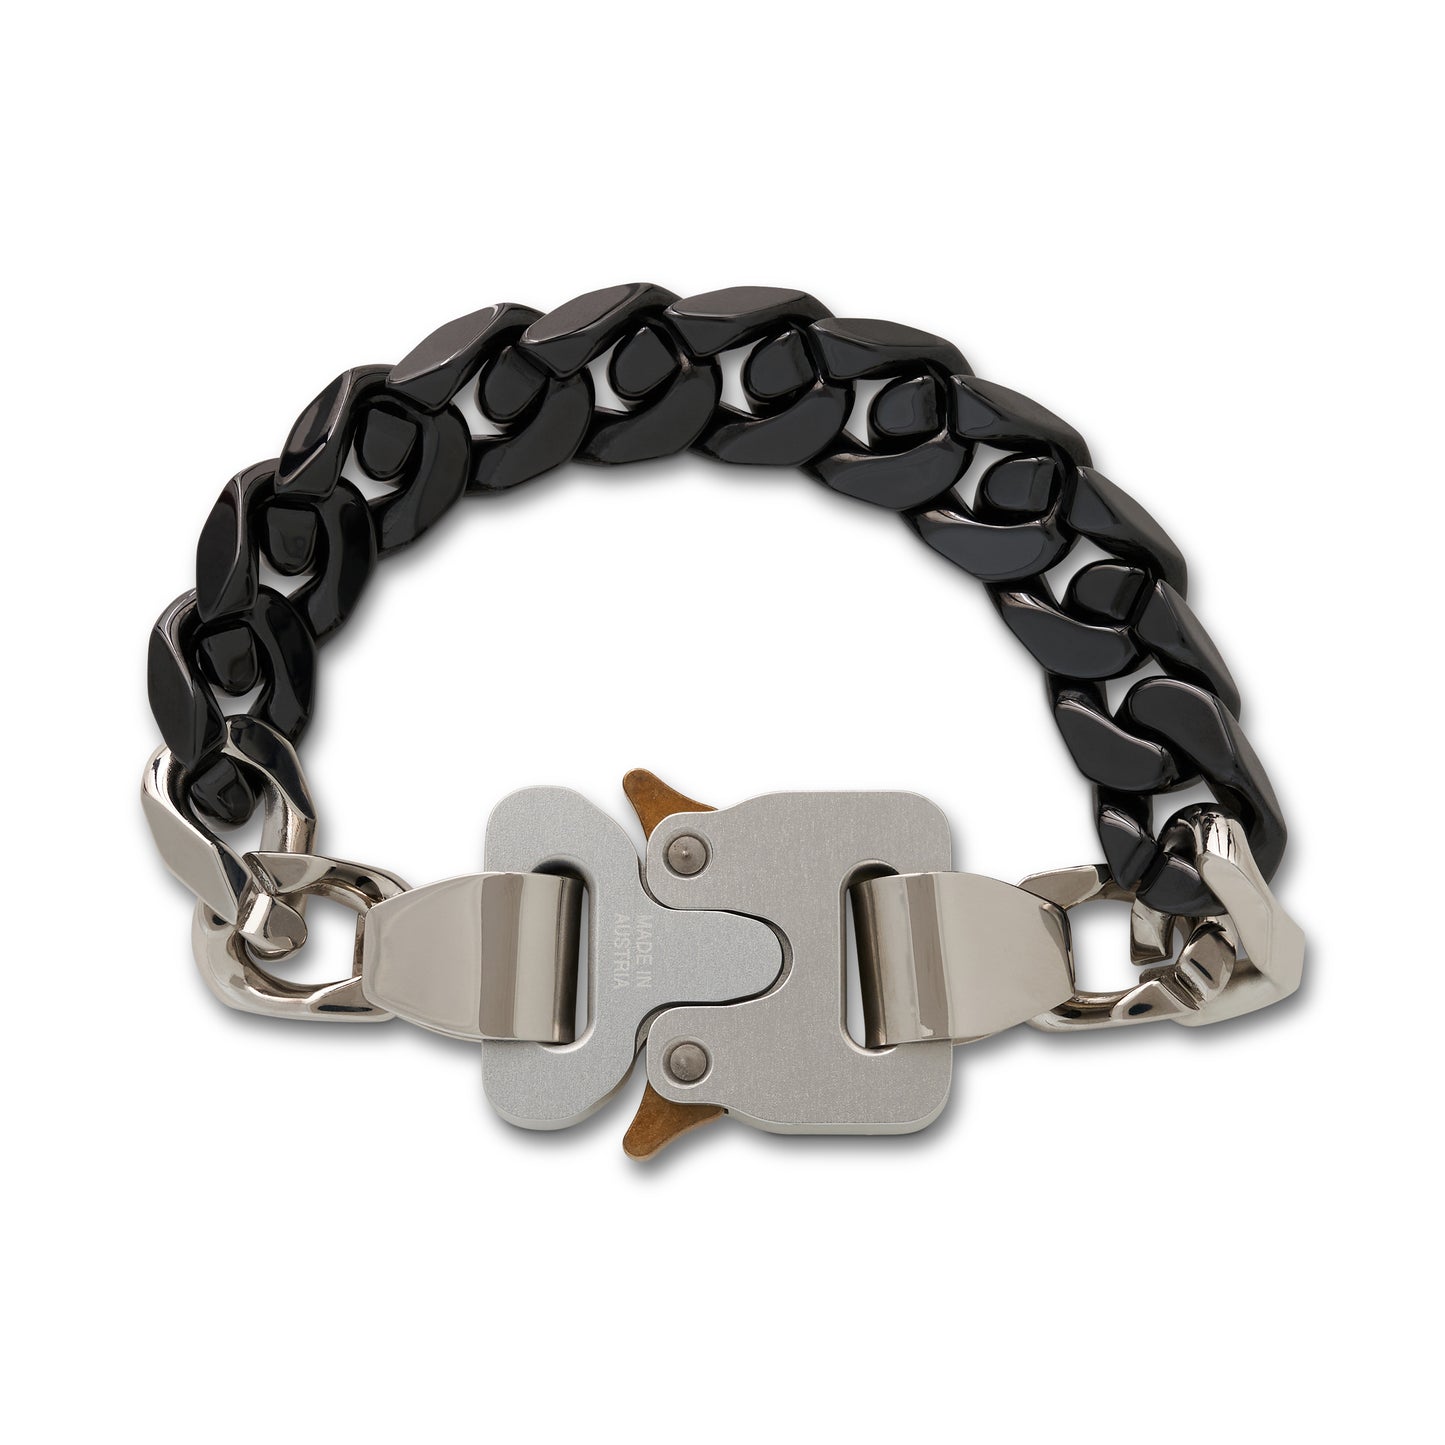 Ceramic Buckle Chain Bracelet in Black